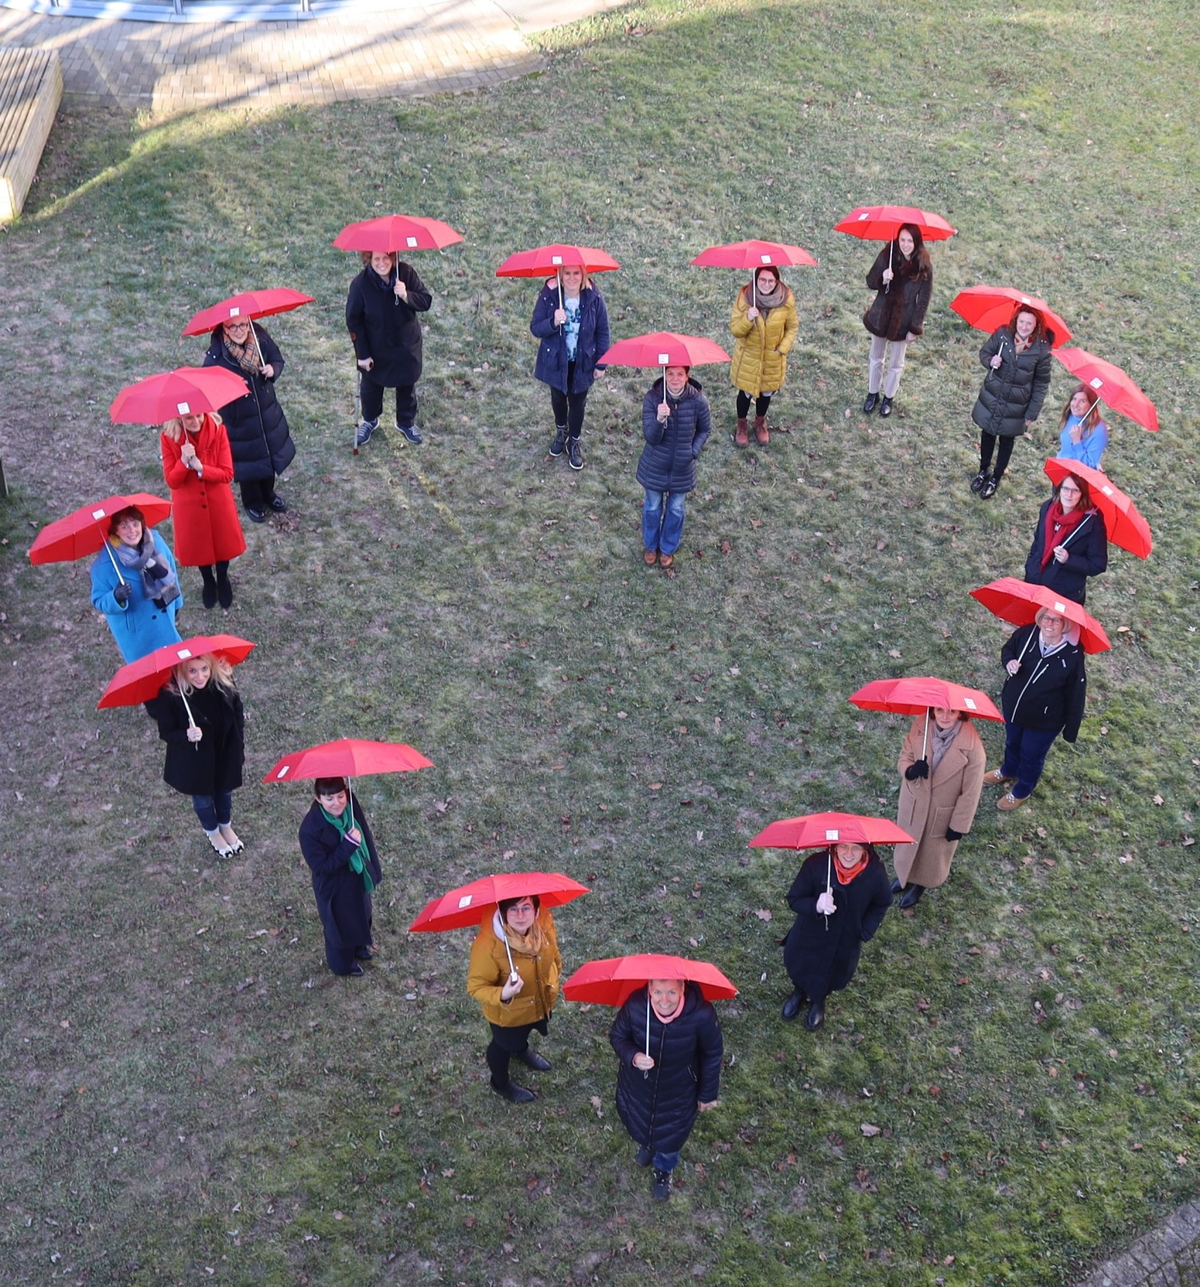 18 Frauen mit roten Regenschirmen bilden ein großes Herz, das von oben fotografiert wurde